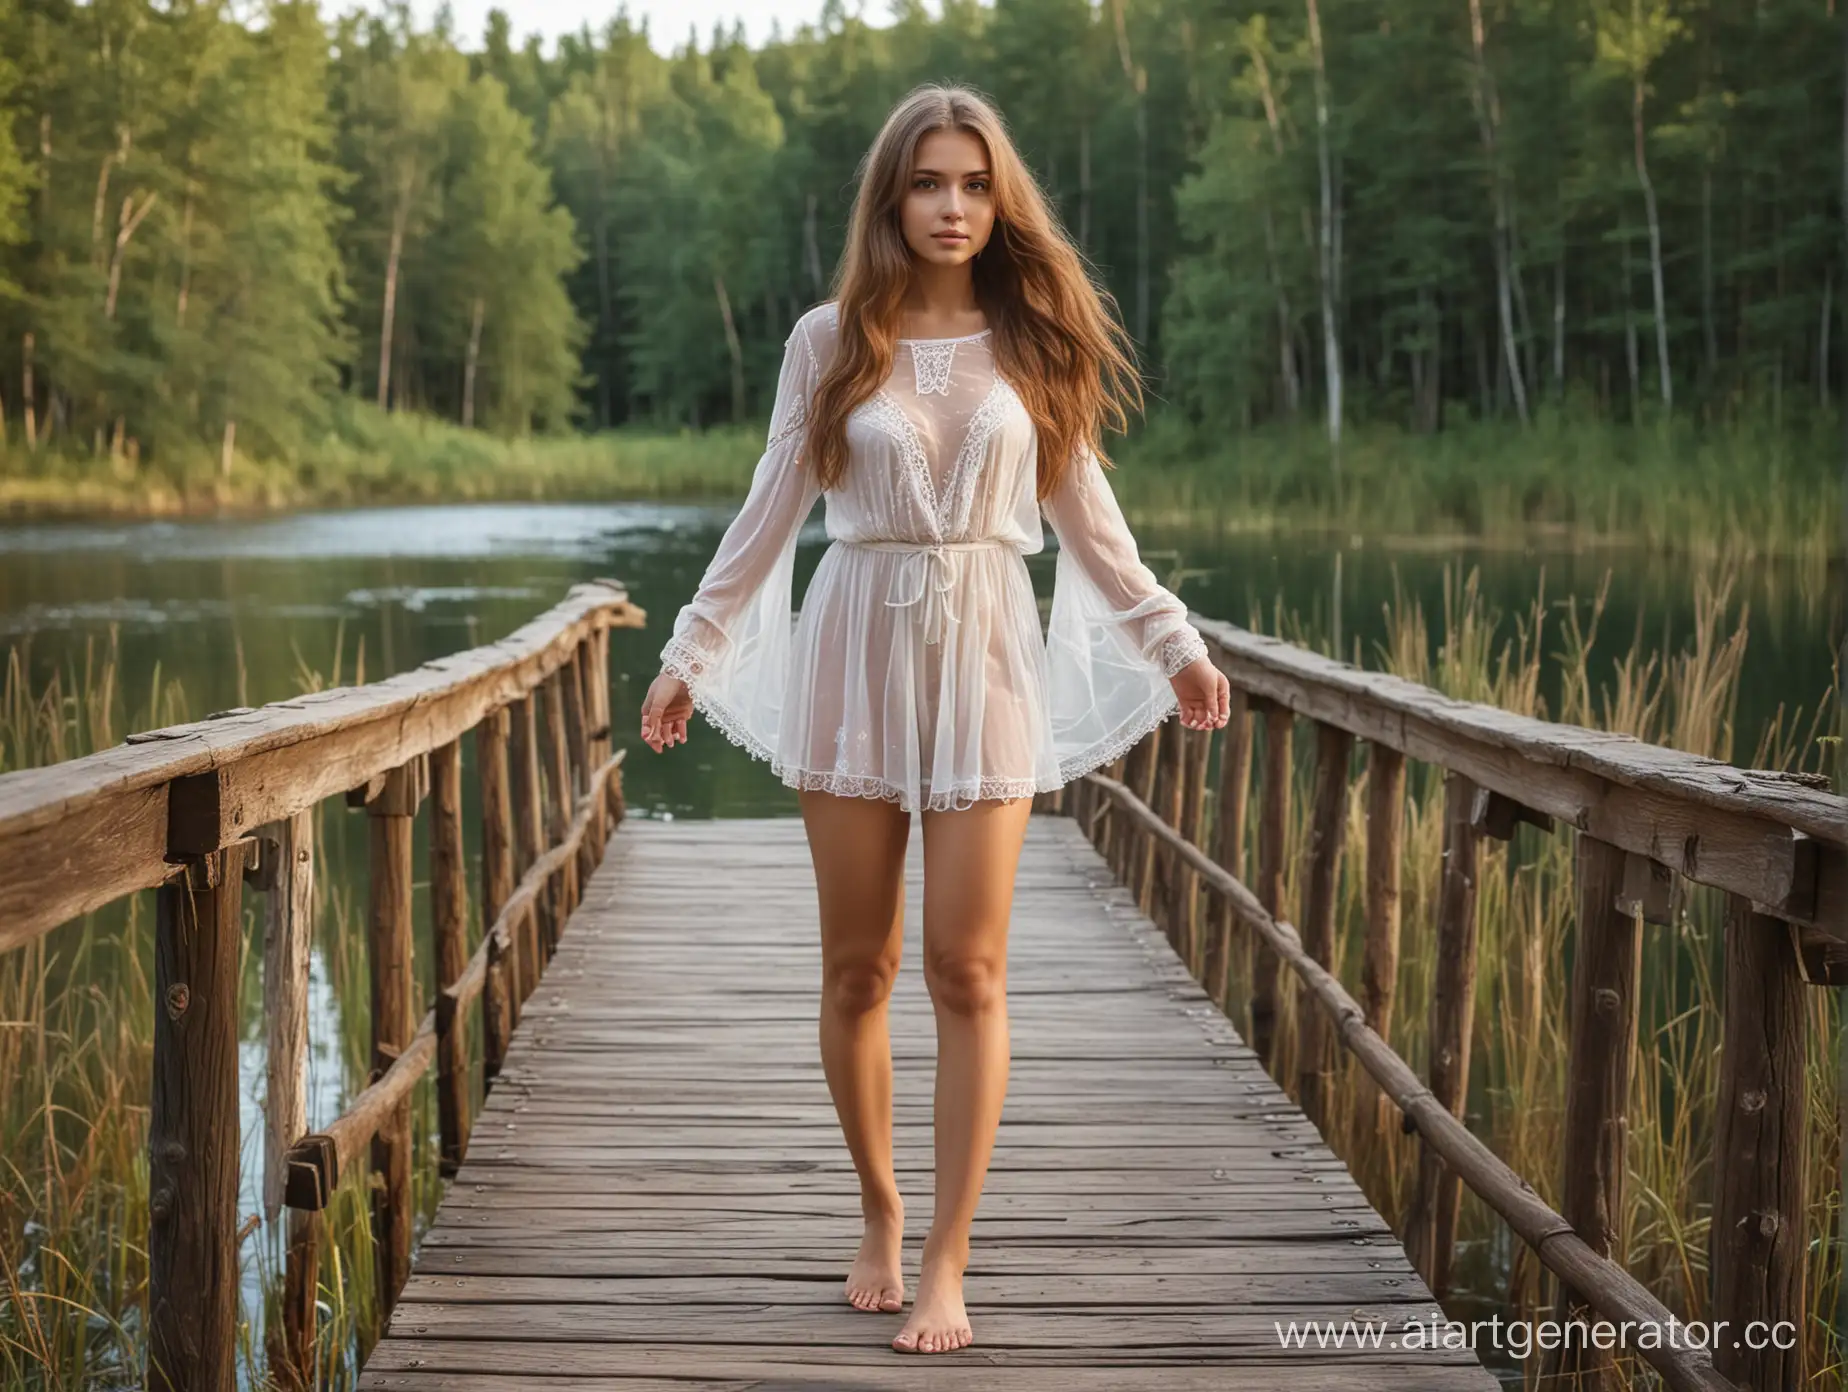 Лесное красивое озеро, молодая сексуальная Русская девушка в полупрозрачном коротком сарафане стоит на деревянном мостике, русые длинные косы, максимальная чёткость в деталях.